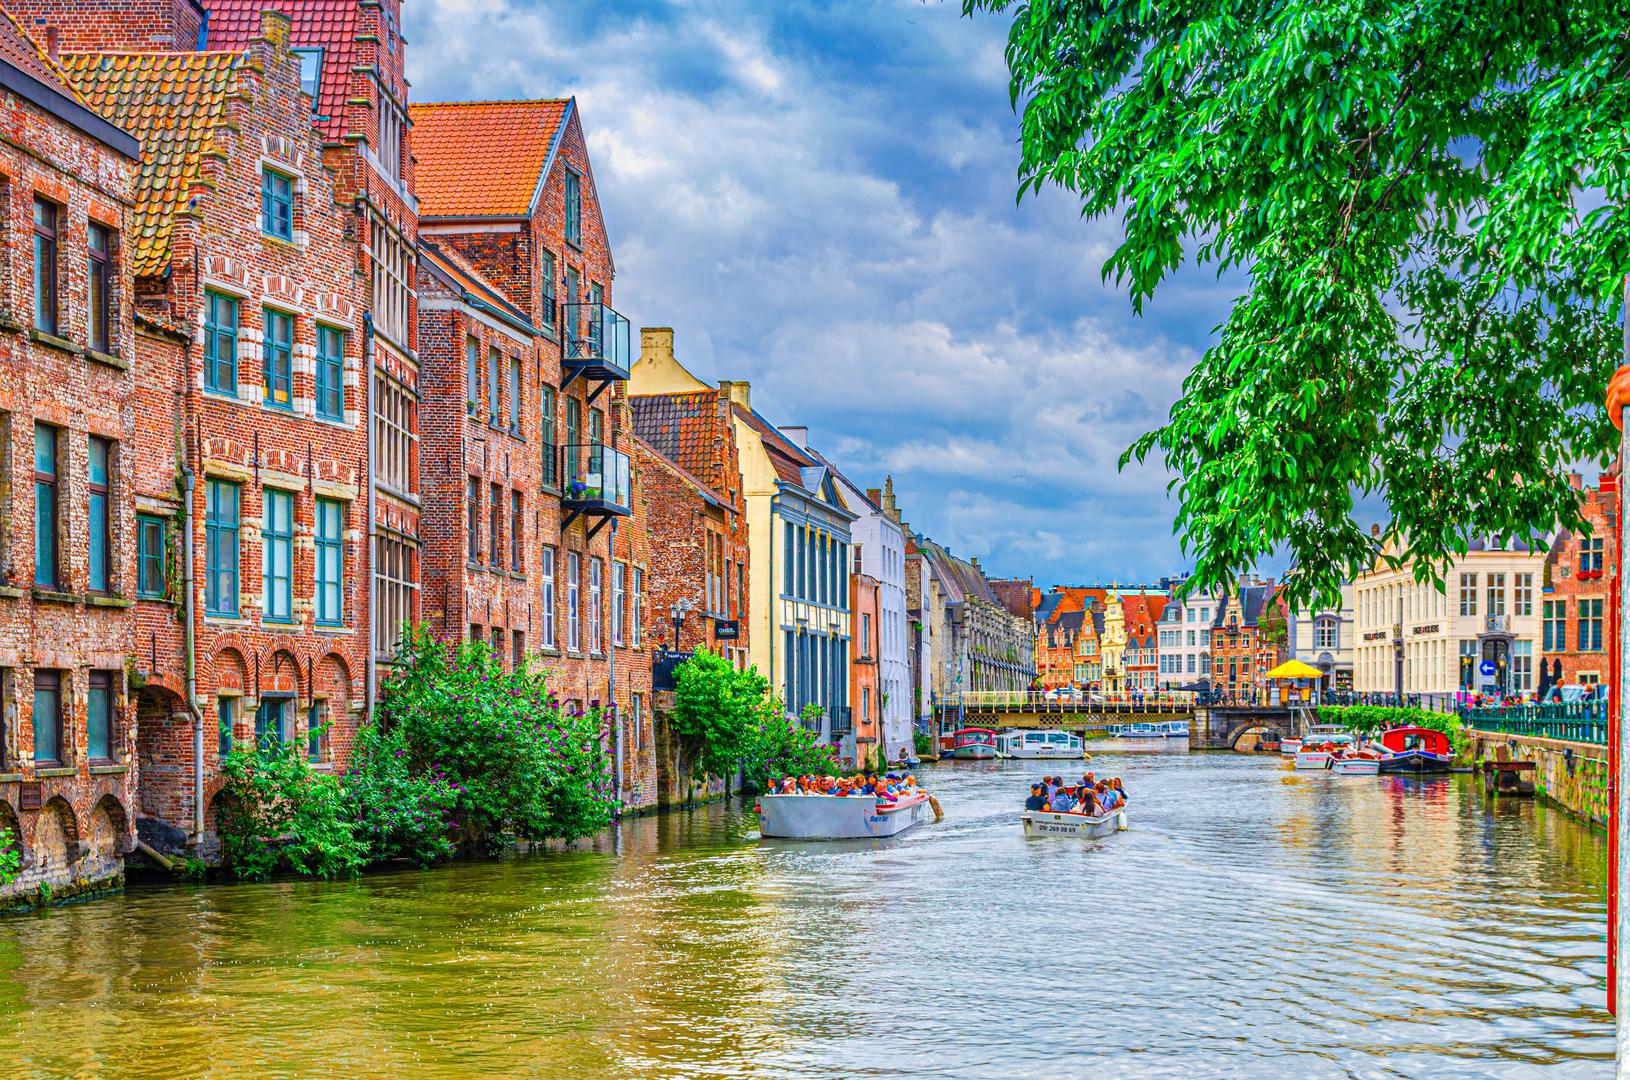 10. Belgija: Belgija je jedna od europskih zemalja koje su najljubaznije prema turistima. Glavna odredišta u zemlji uključuju Bruges i Bruxelles, ali Gent je fantastična opcija za turiste koji traže grad kojim se može prošetati.